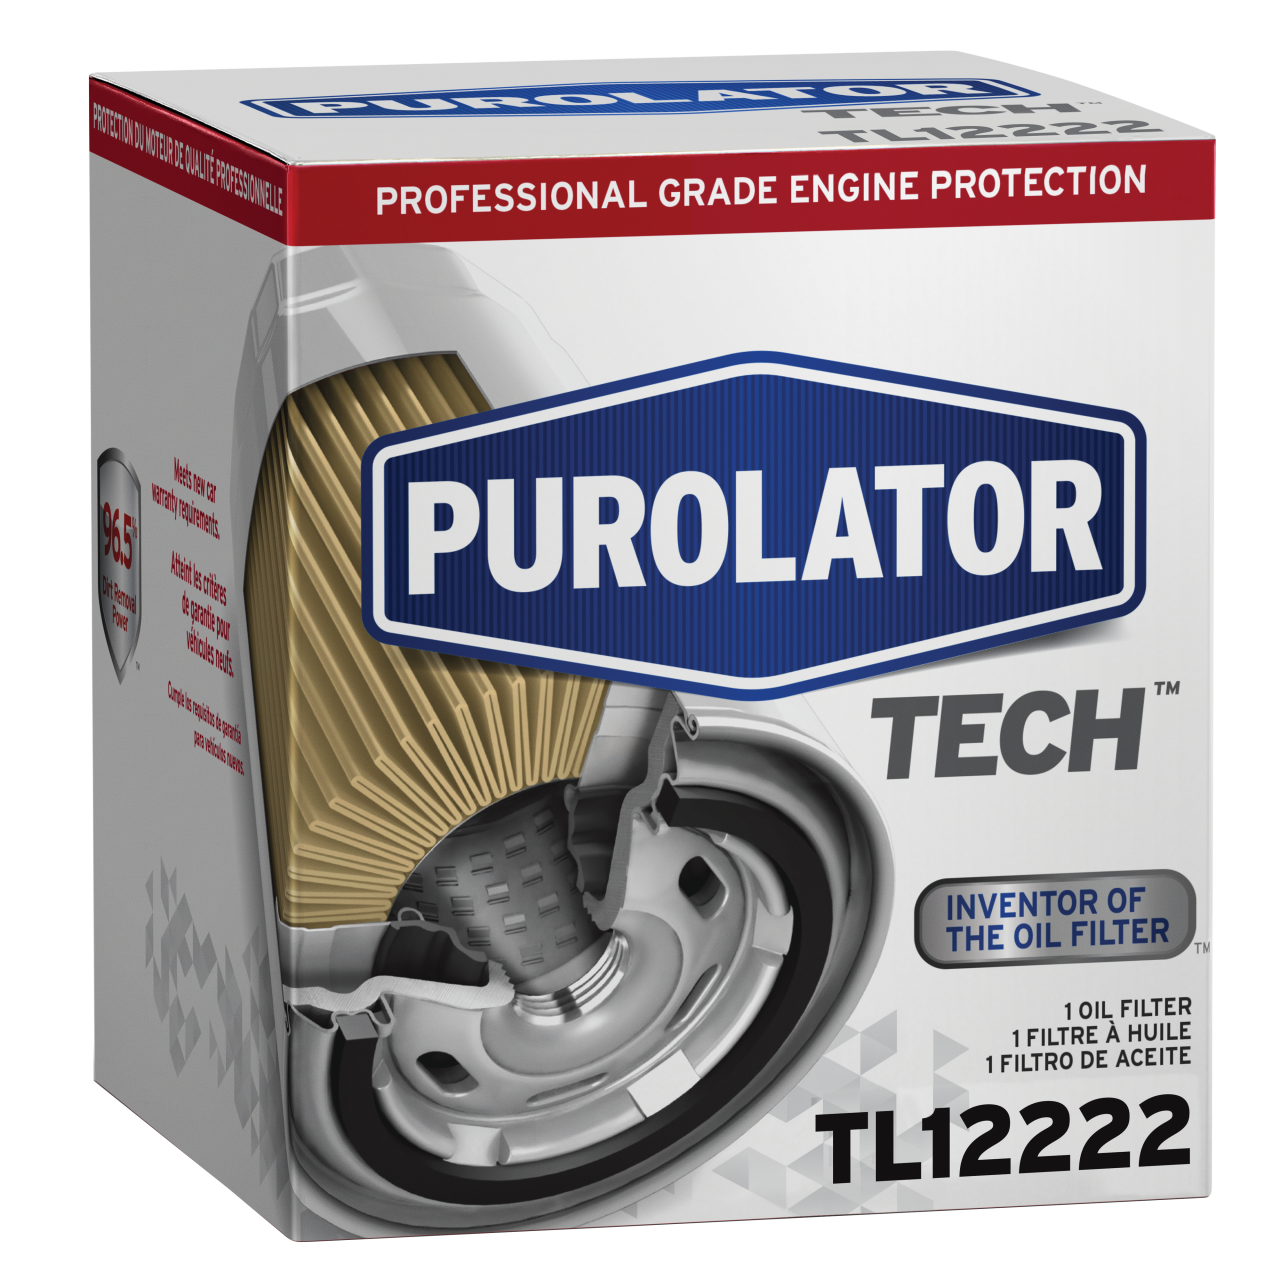 Beaucoup des meilleurs experts automobiles font confiance aux filtres à huile PurolatorTECH ™ pour des performances et une protection moteur de premier ordre.